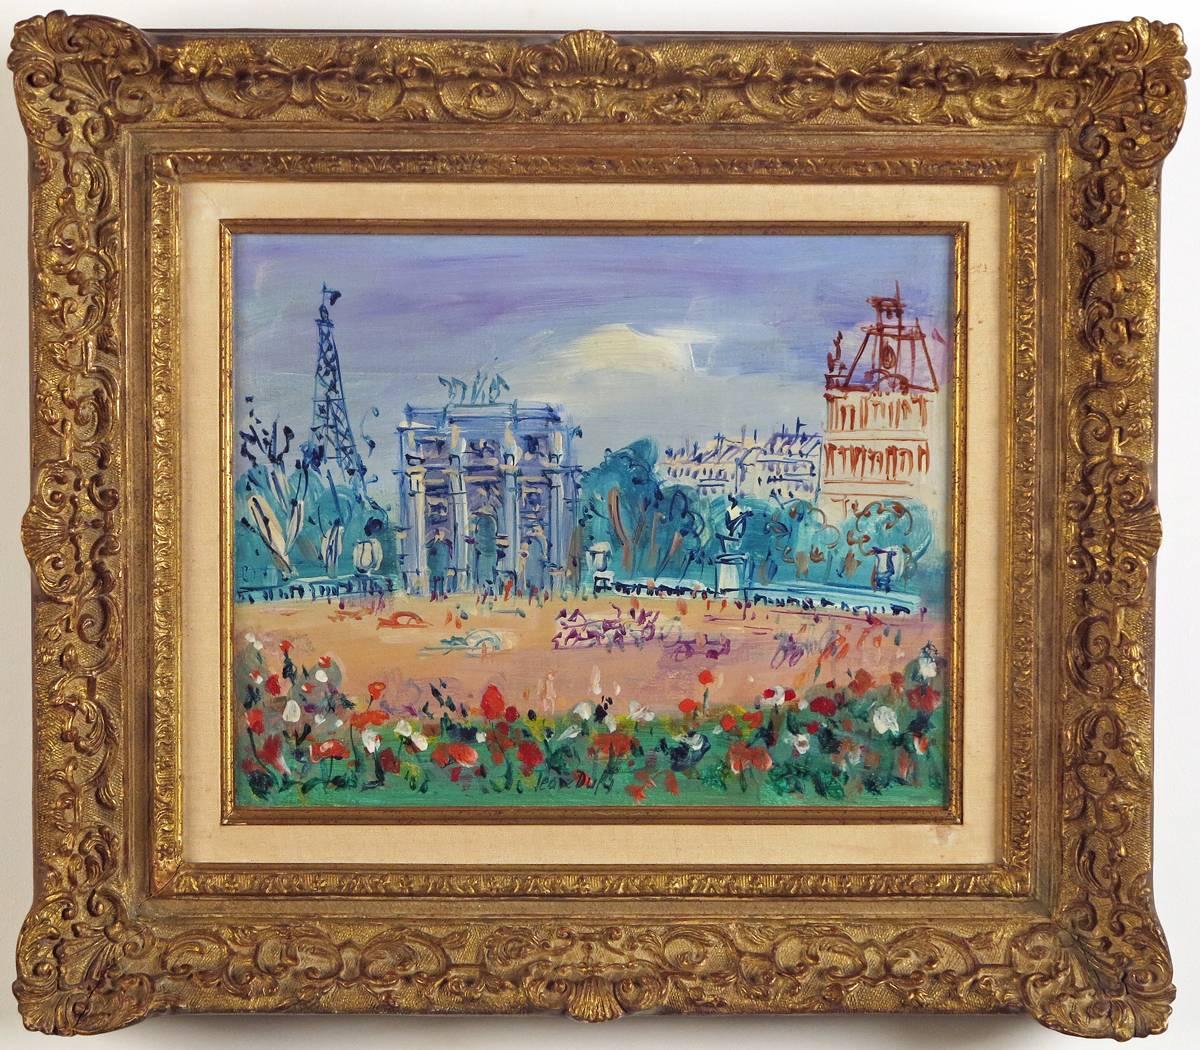 Le Jardin des Tuileries et l‘Arc de Triomphe du Carrousel  - Painting by Jean Dufy